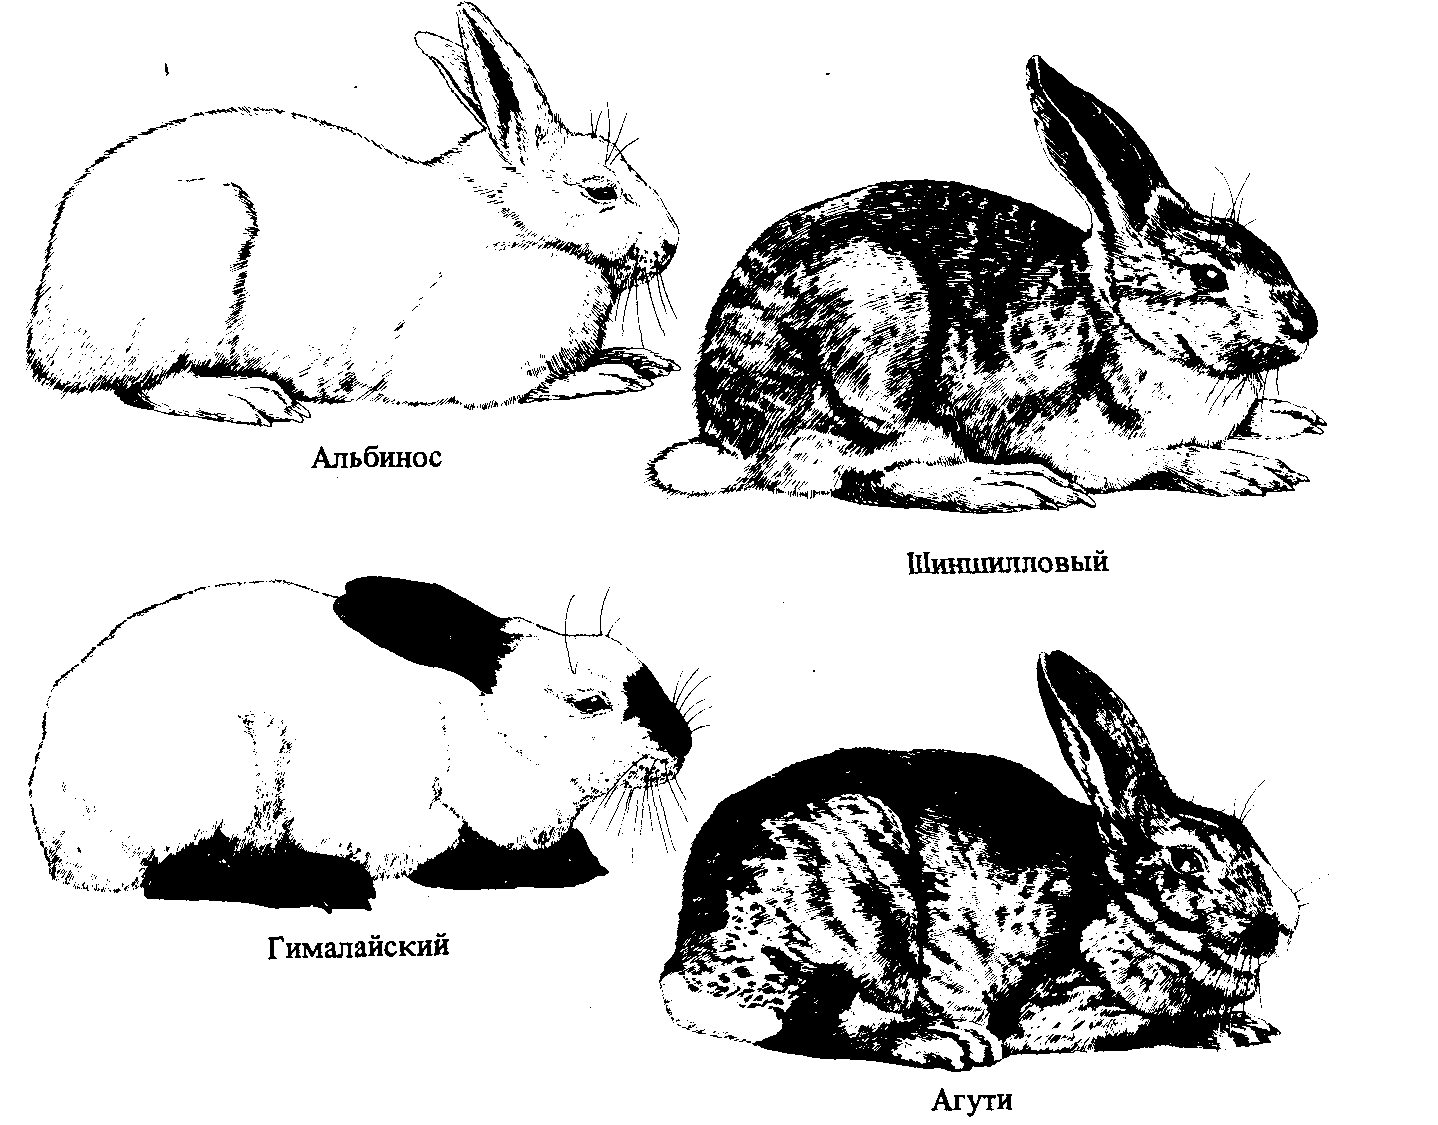 Шерсть гималайских кроликов